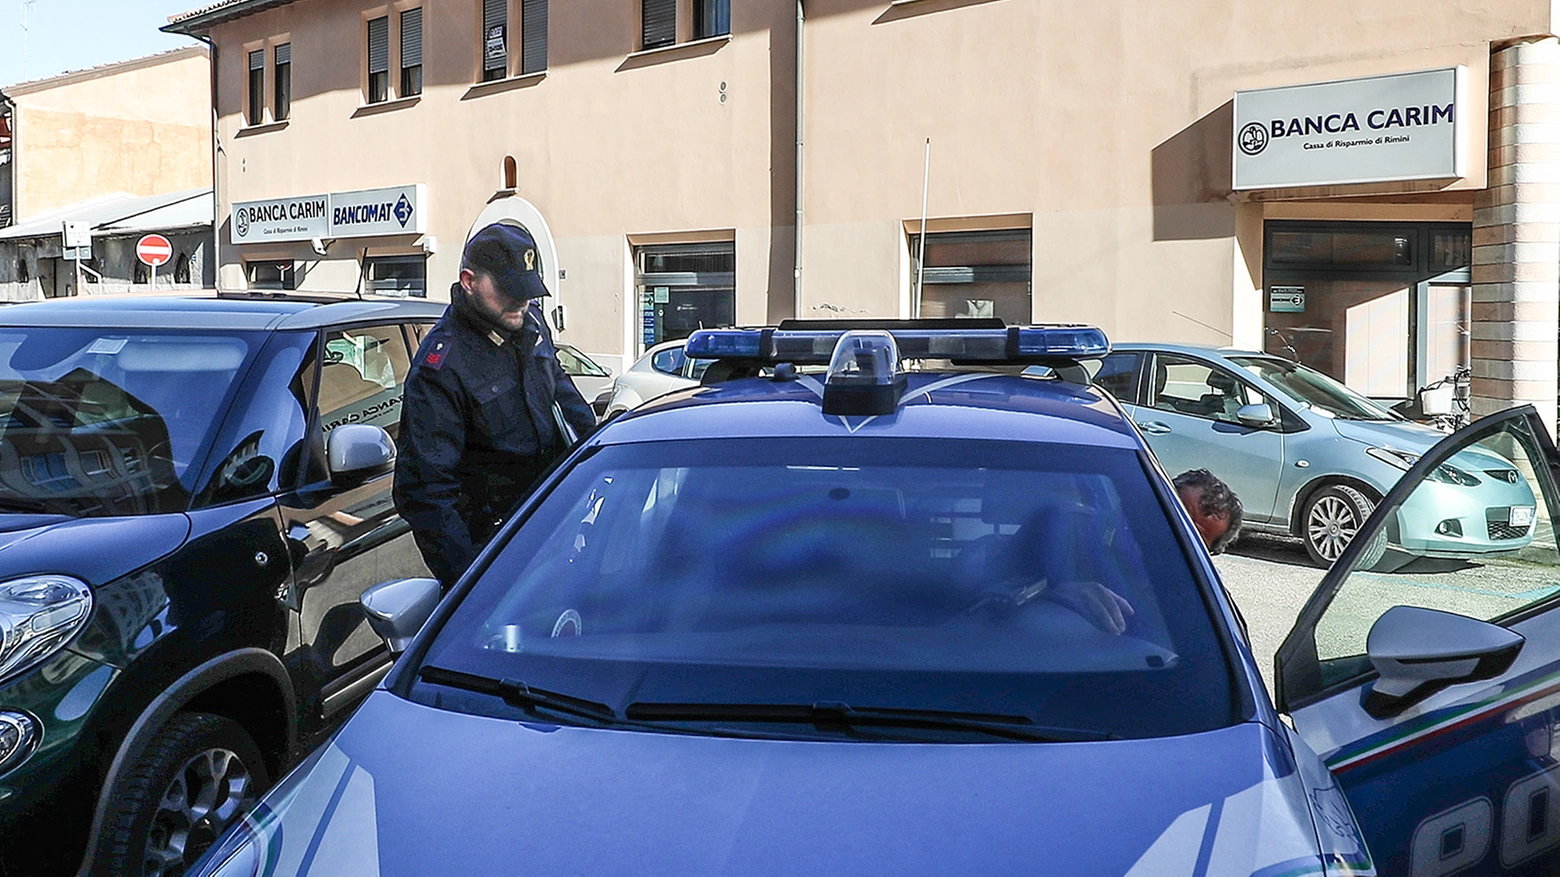 La polizia davanti alla filiale rapinata (FotoPrint)